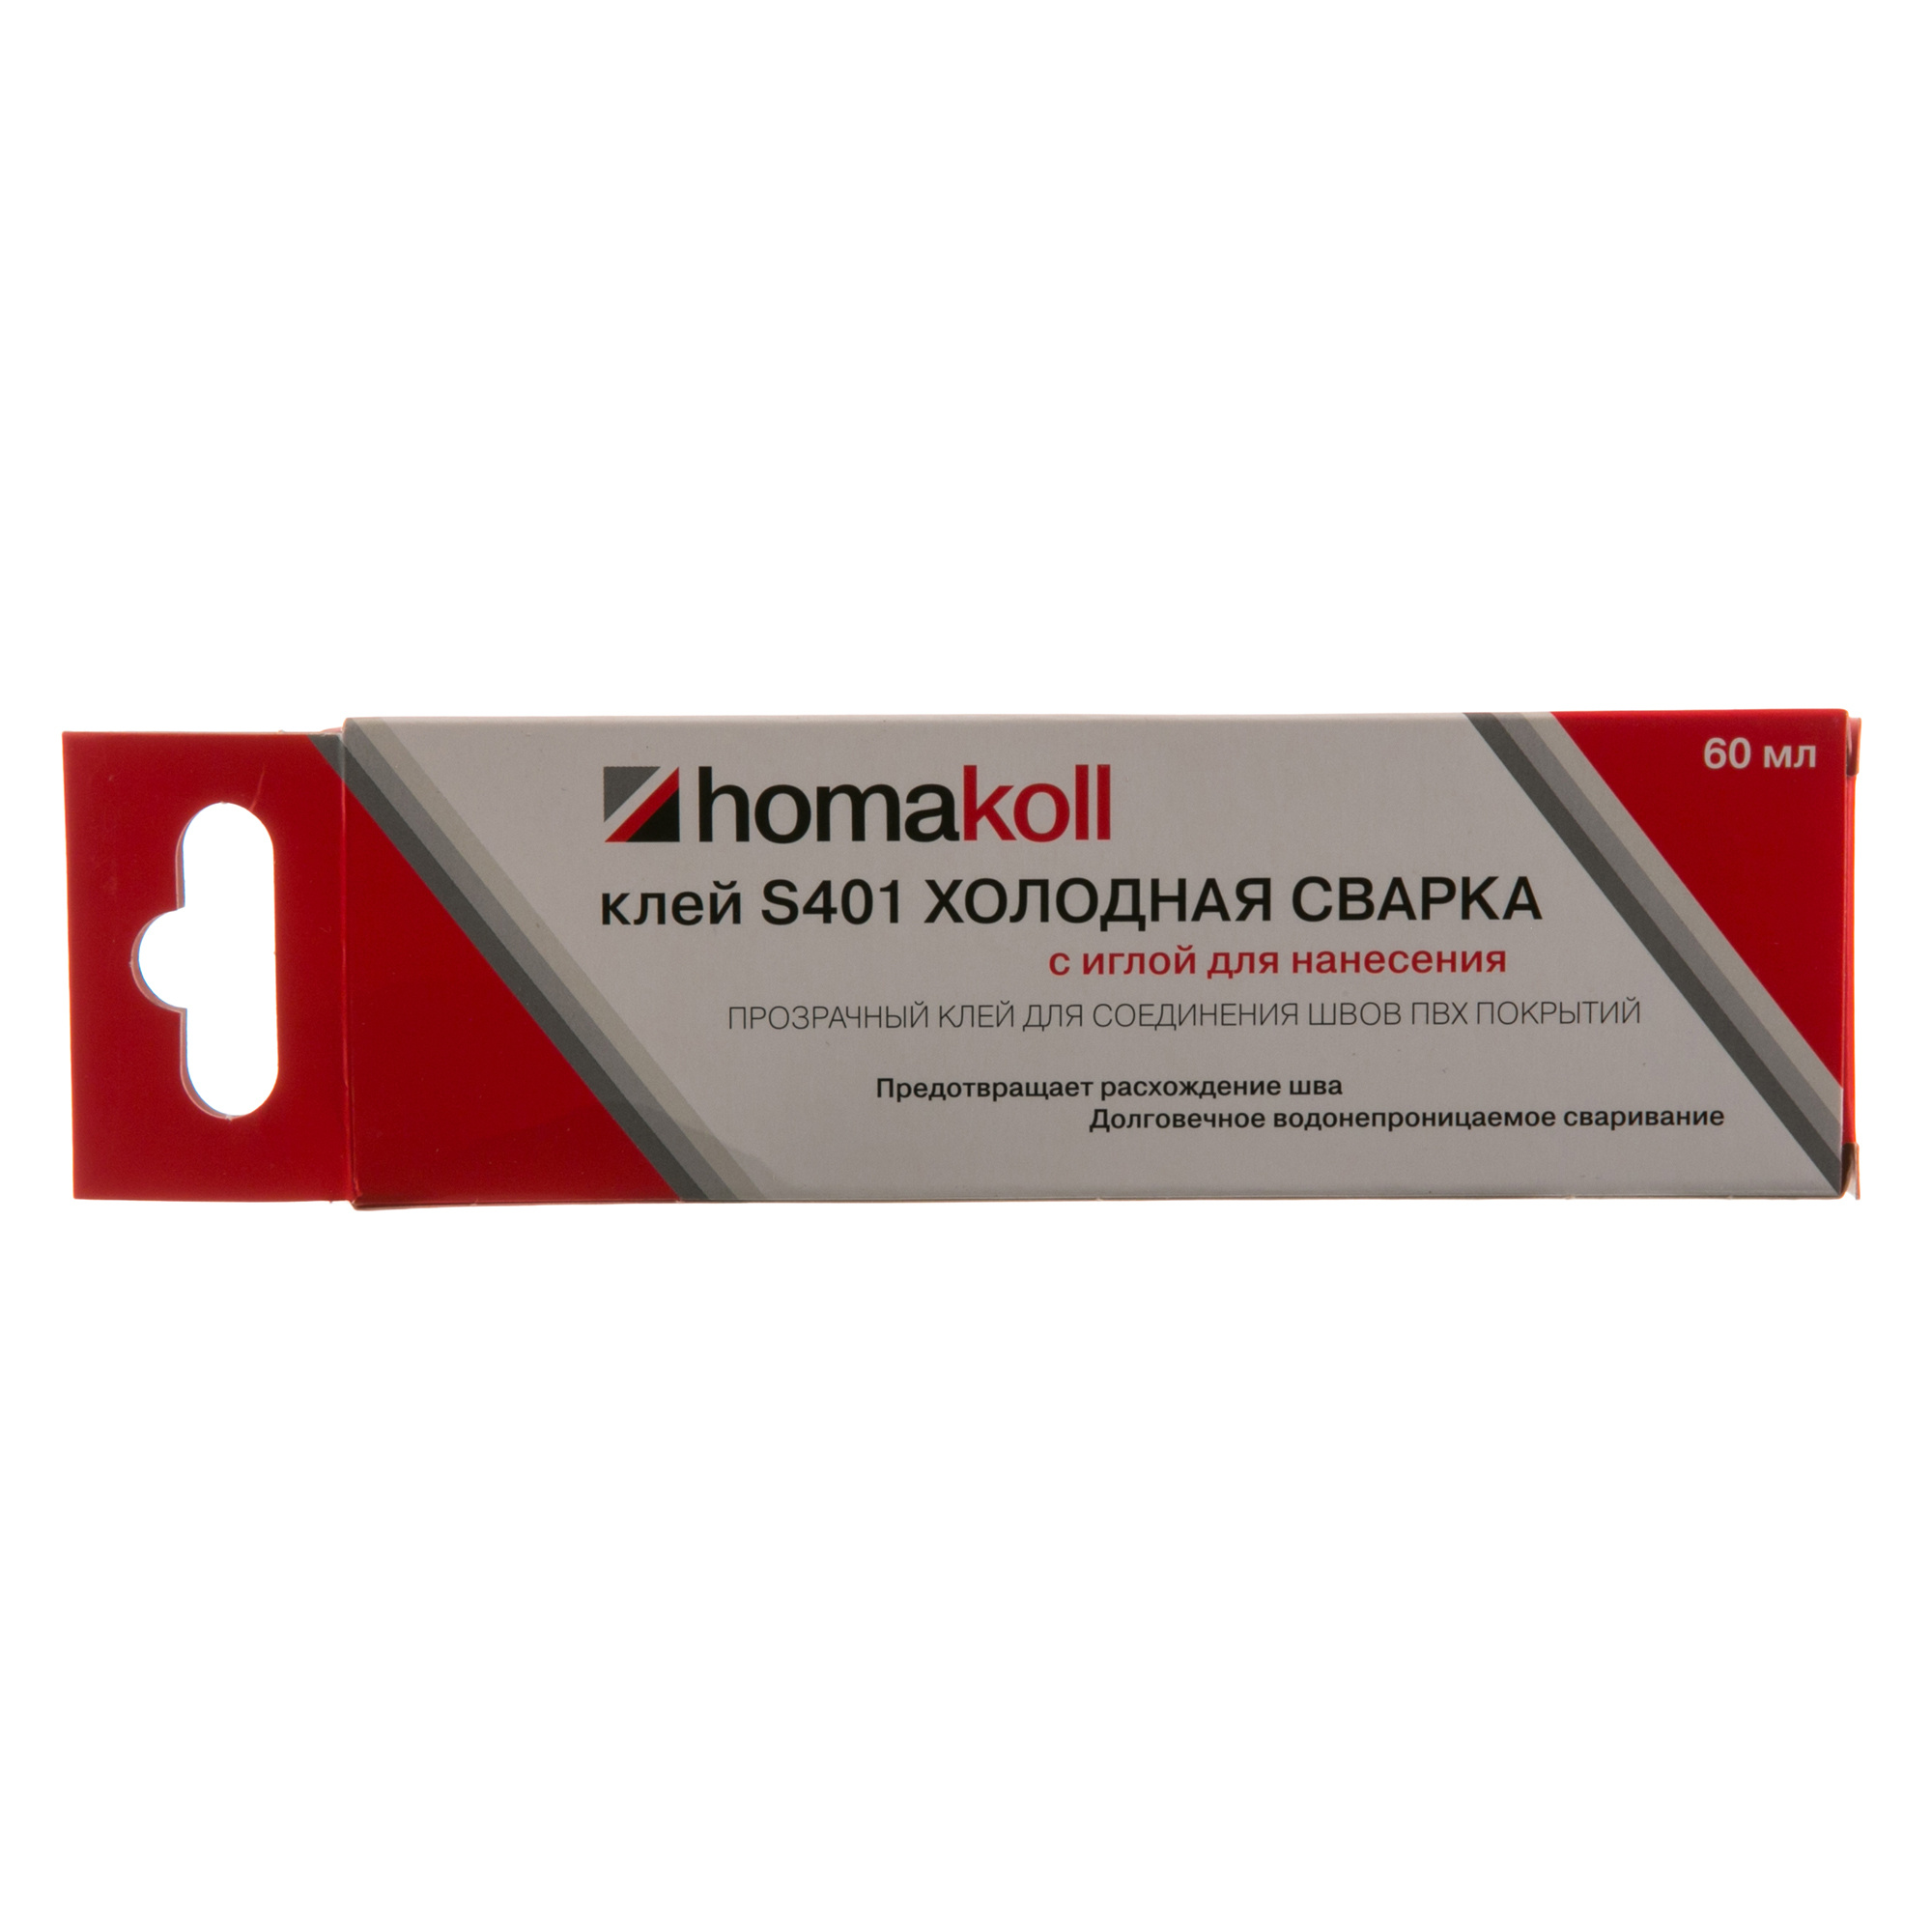 Холодная сварка для линолеума Хомакол (Homakoll) 0.06 кг –  в .